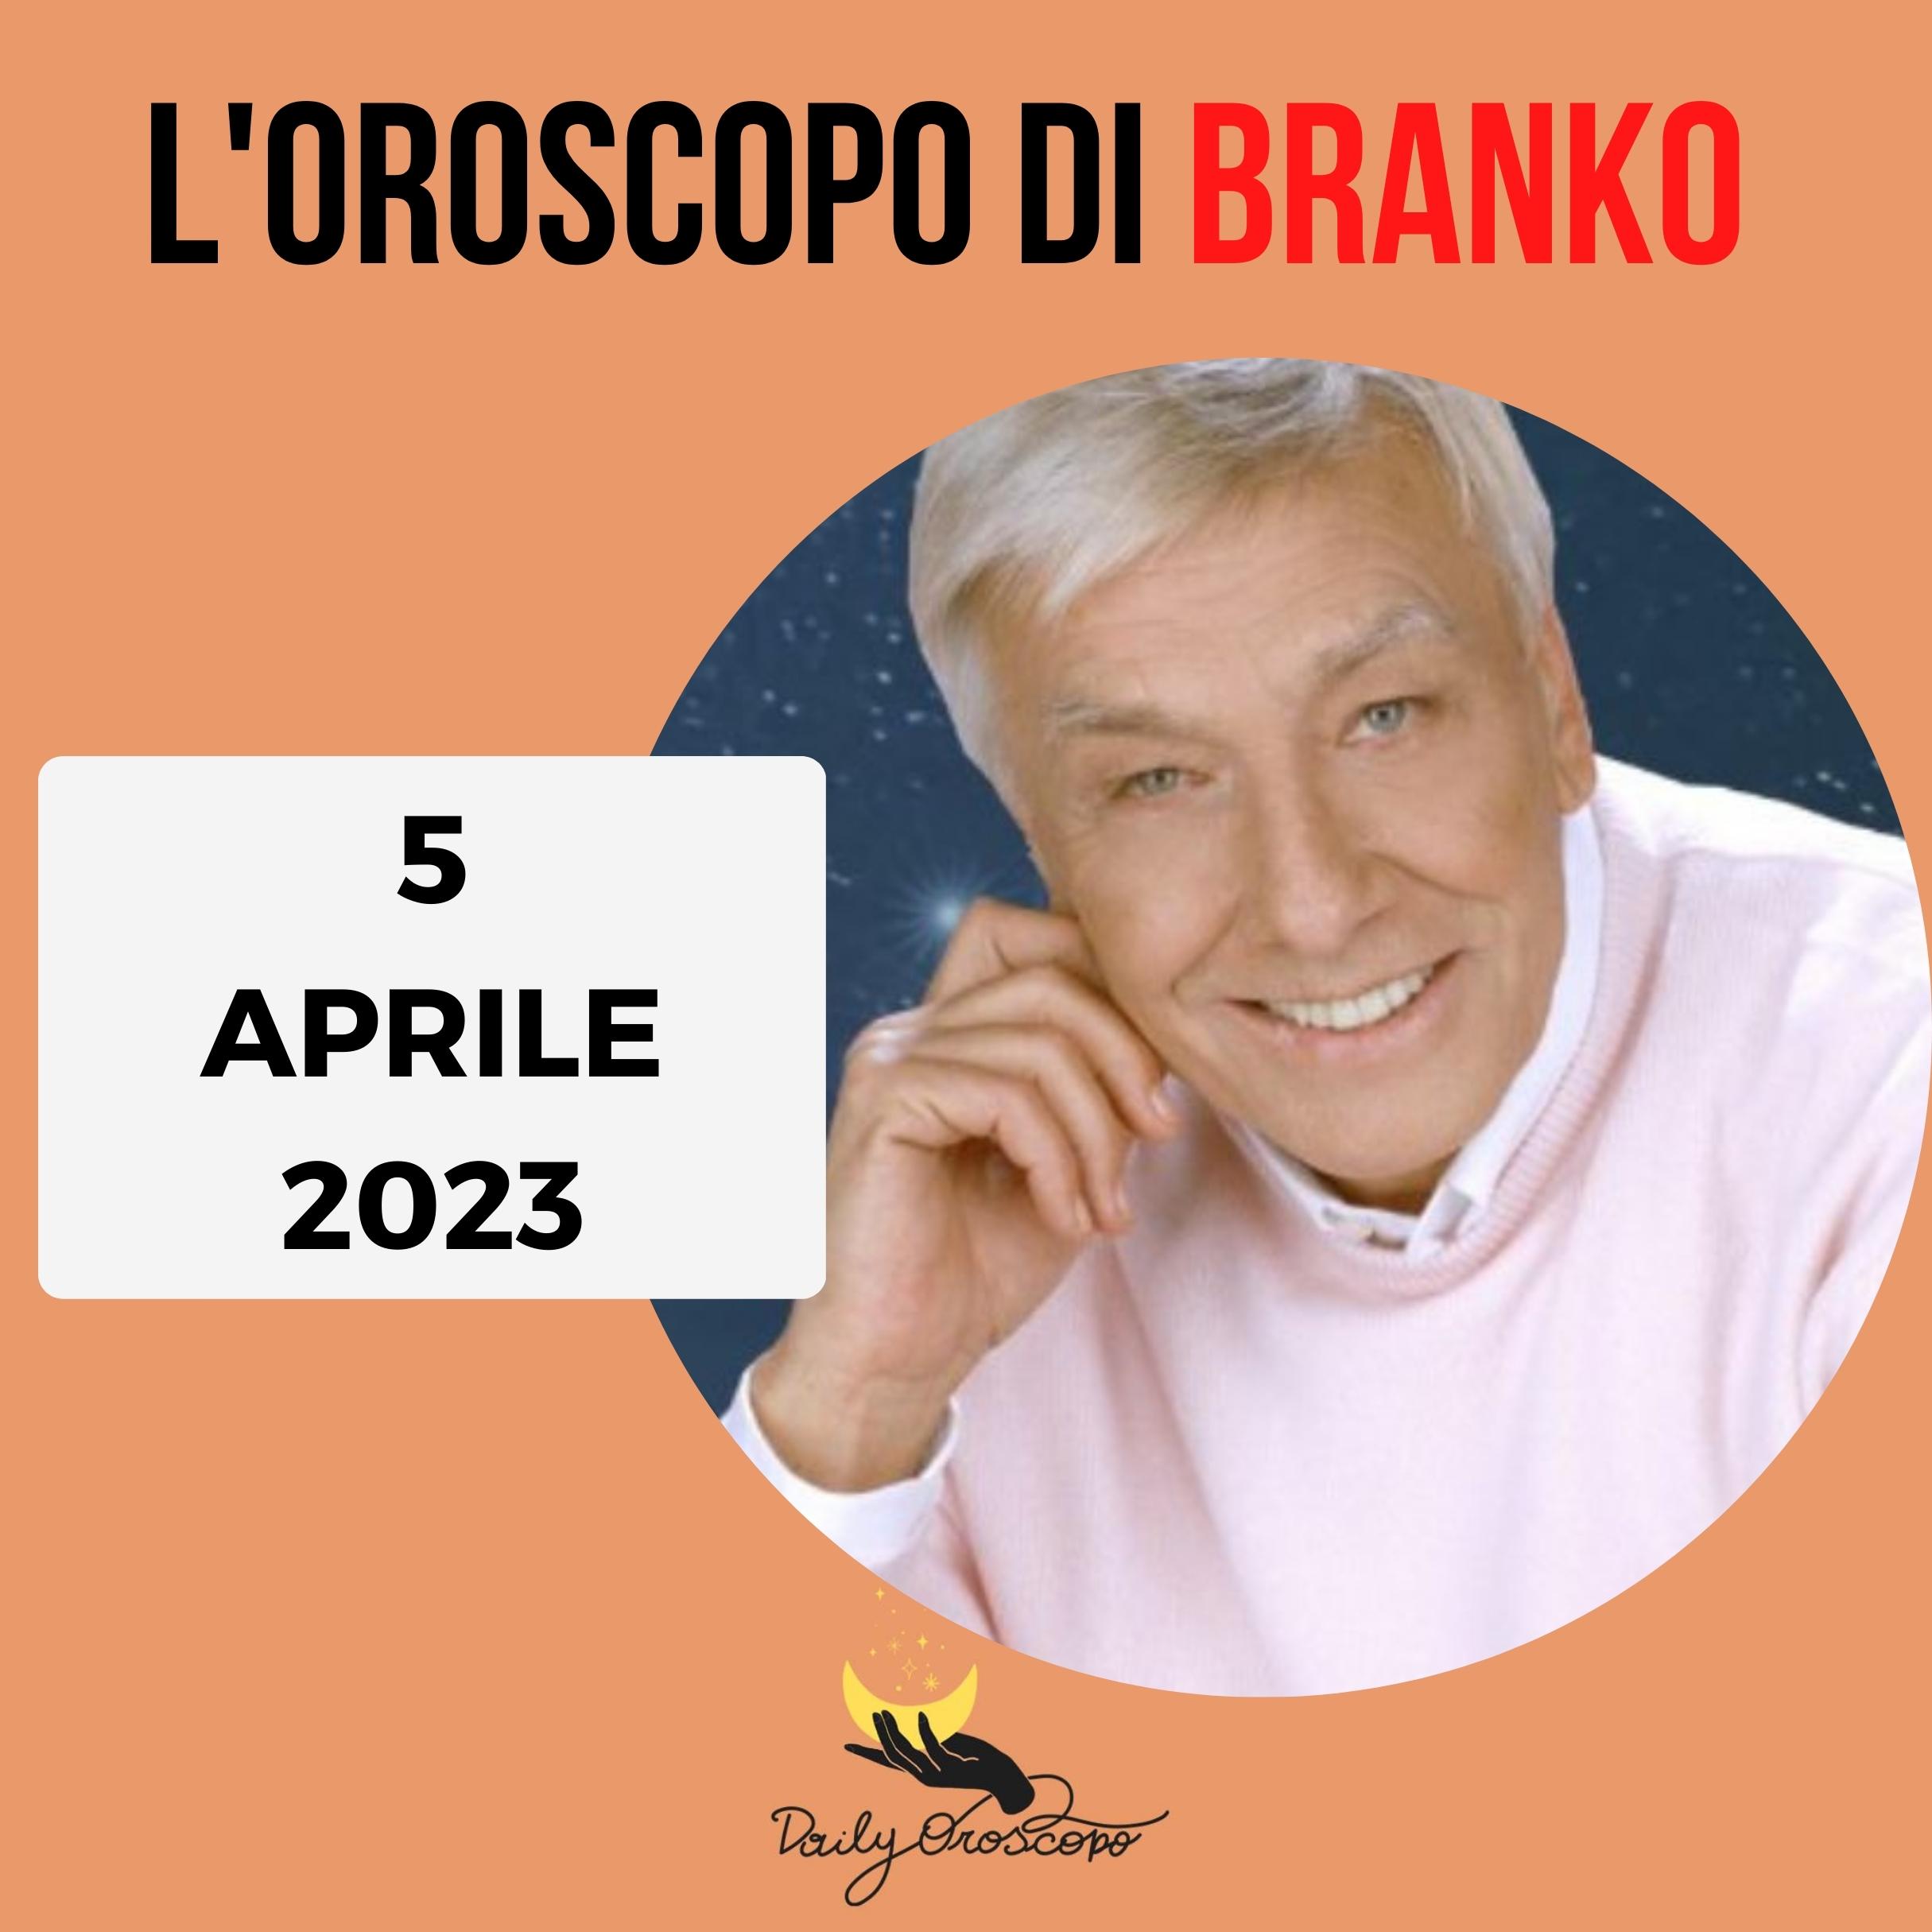 Oroscopo Branko oggi 5 aprile 2023